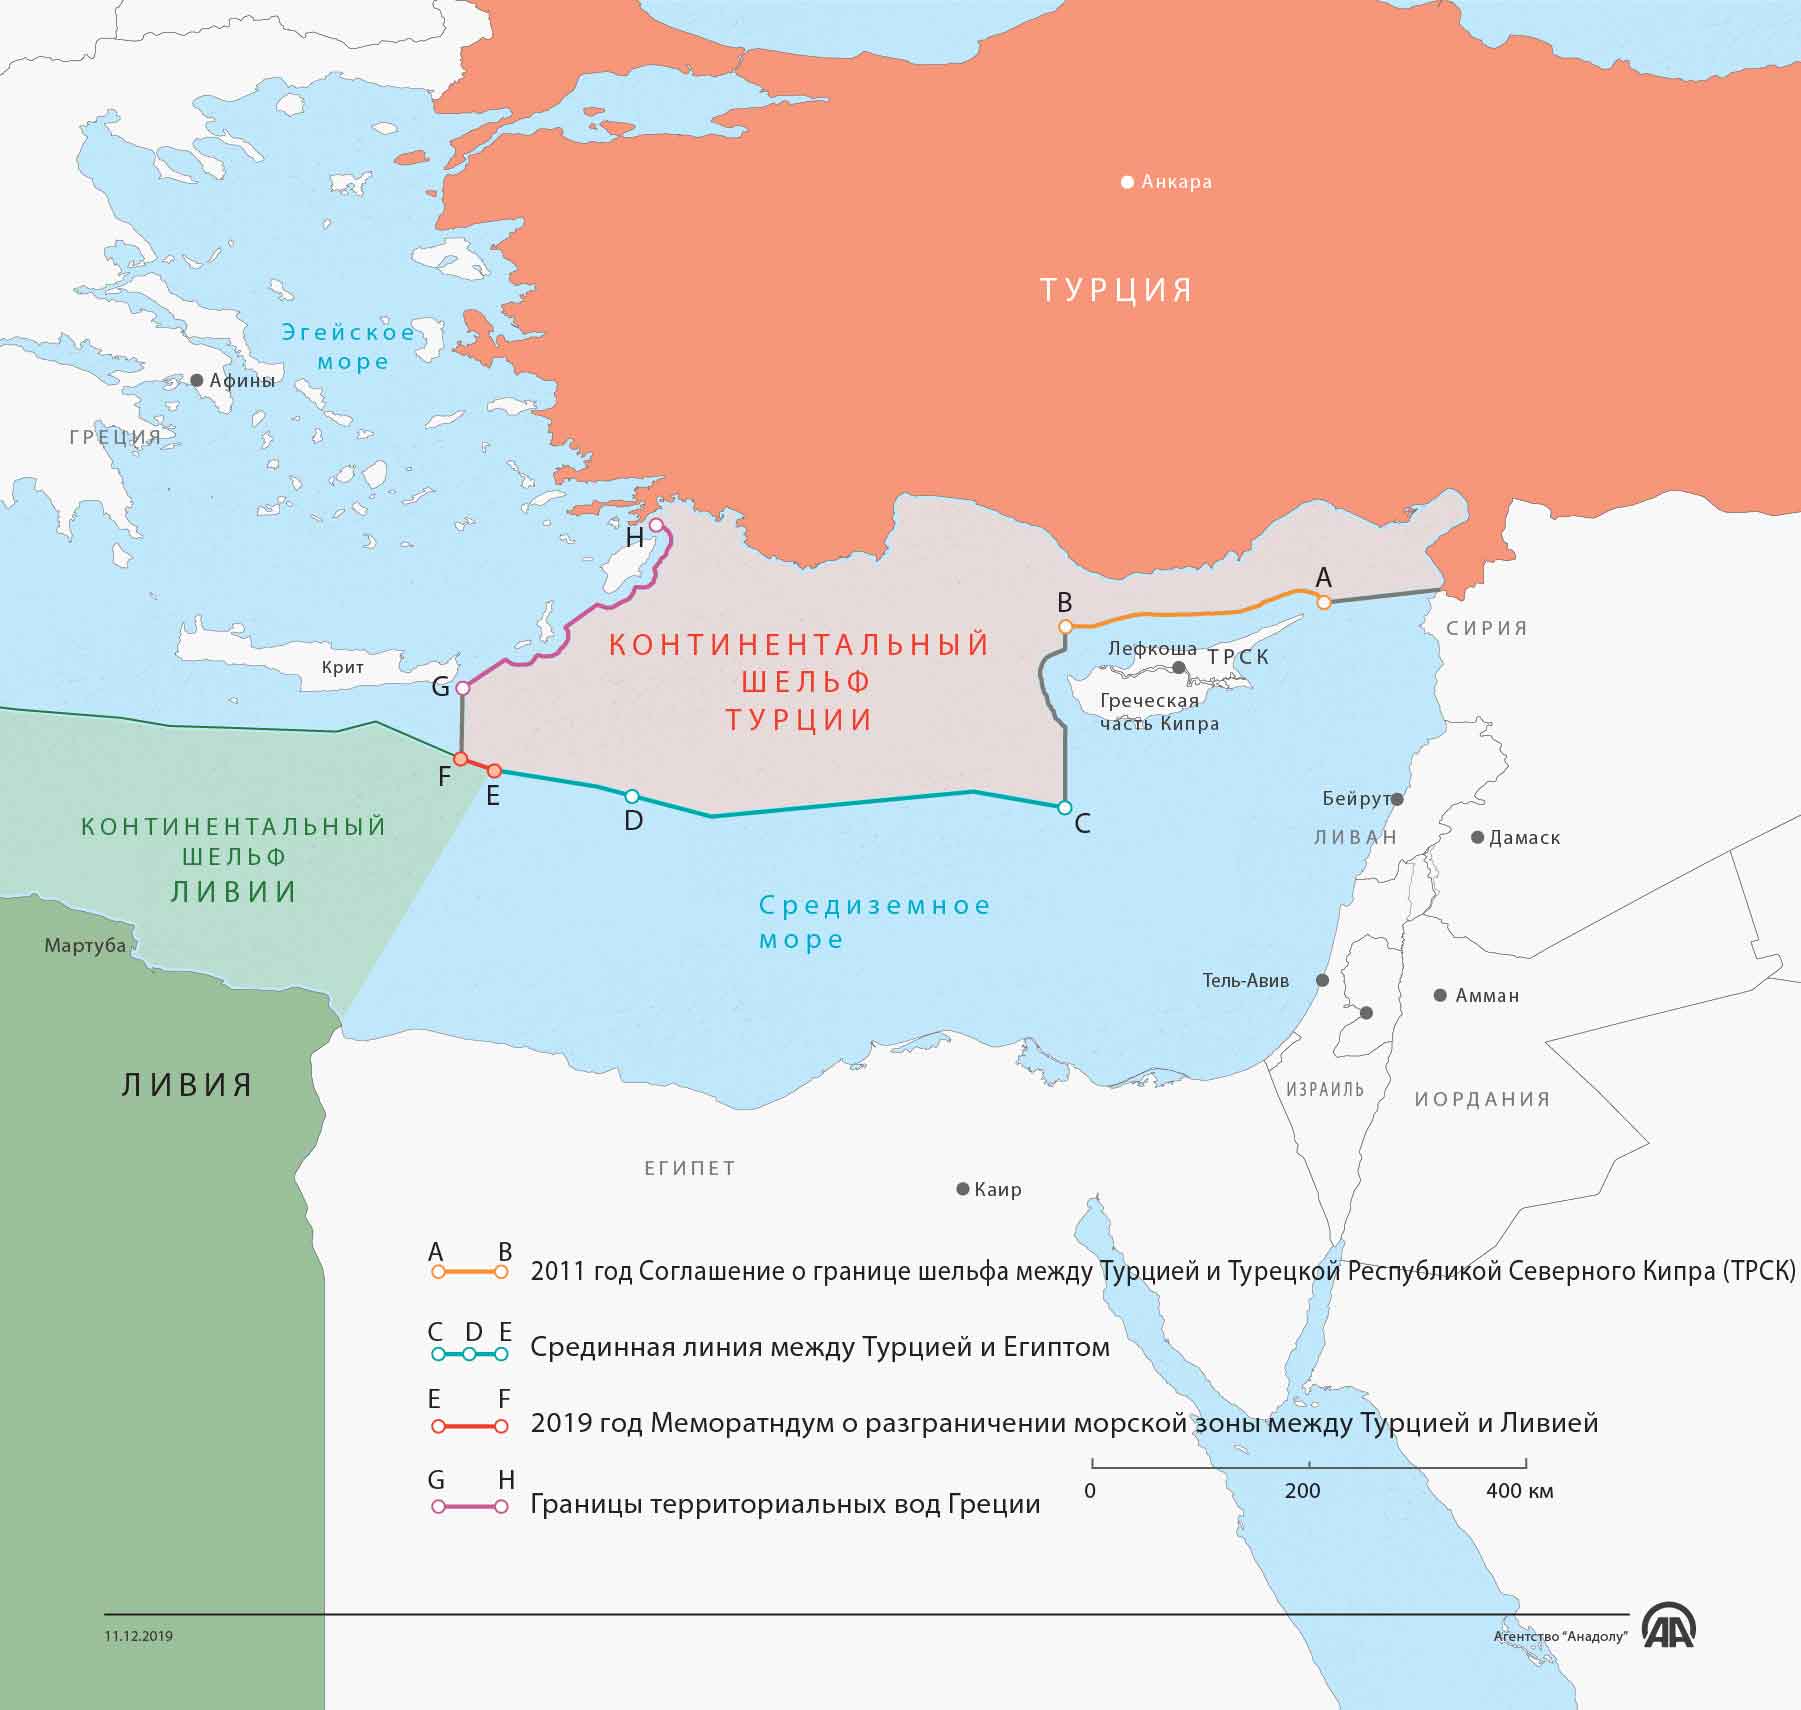 Линия разграничения морской зоны Турции в Средиземномье